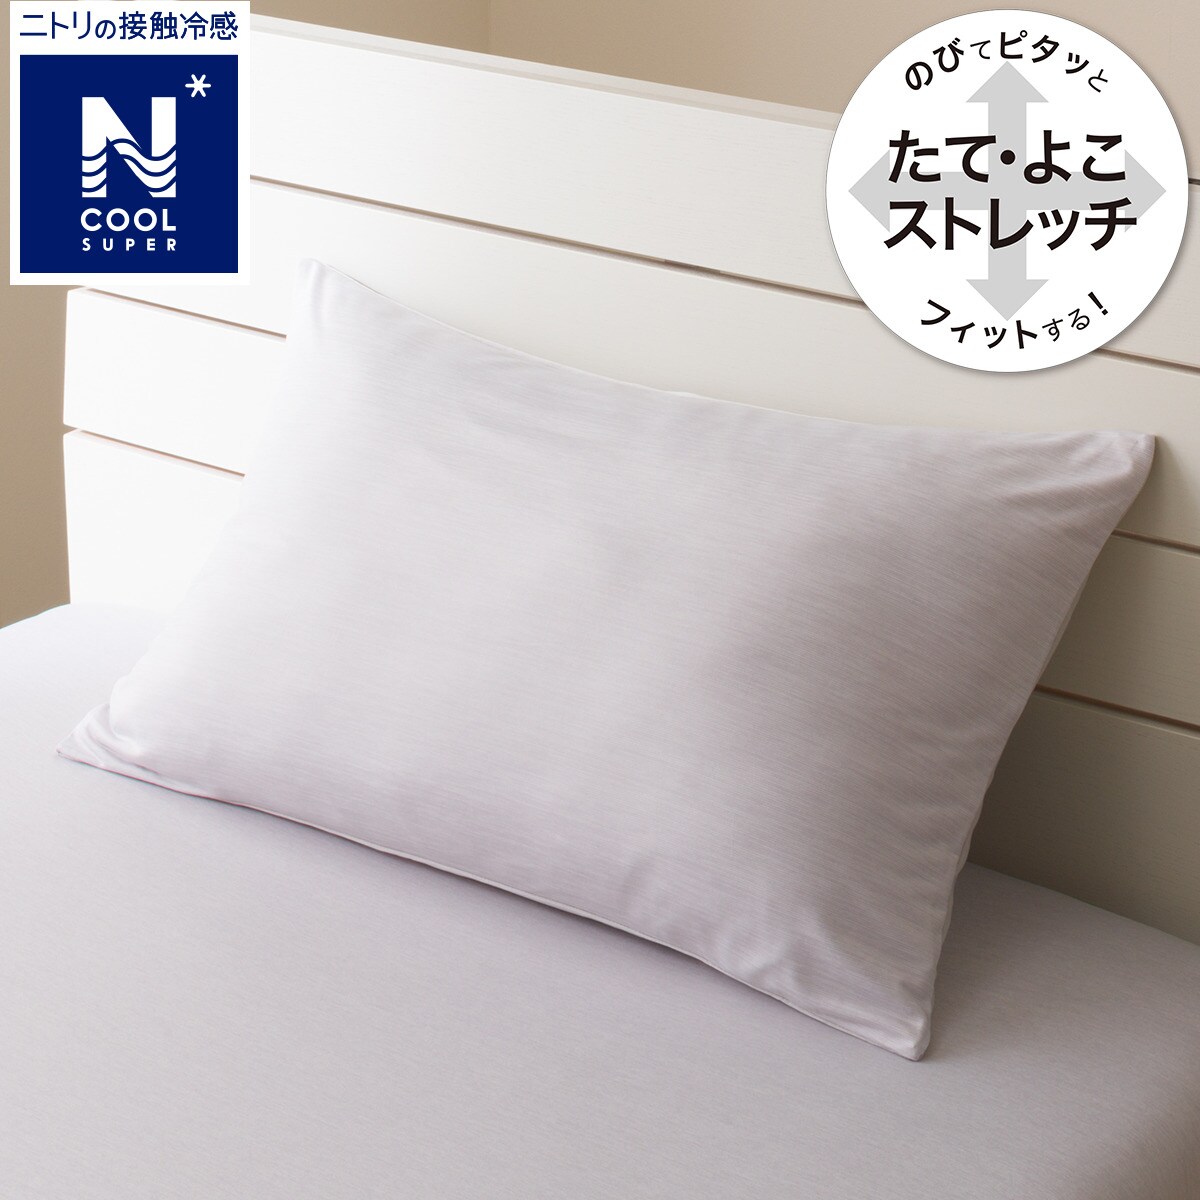 ニトリの枕カバー(NFIT NクールSPGY23Nクール-11)   【1年保証】(布団・寝具)